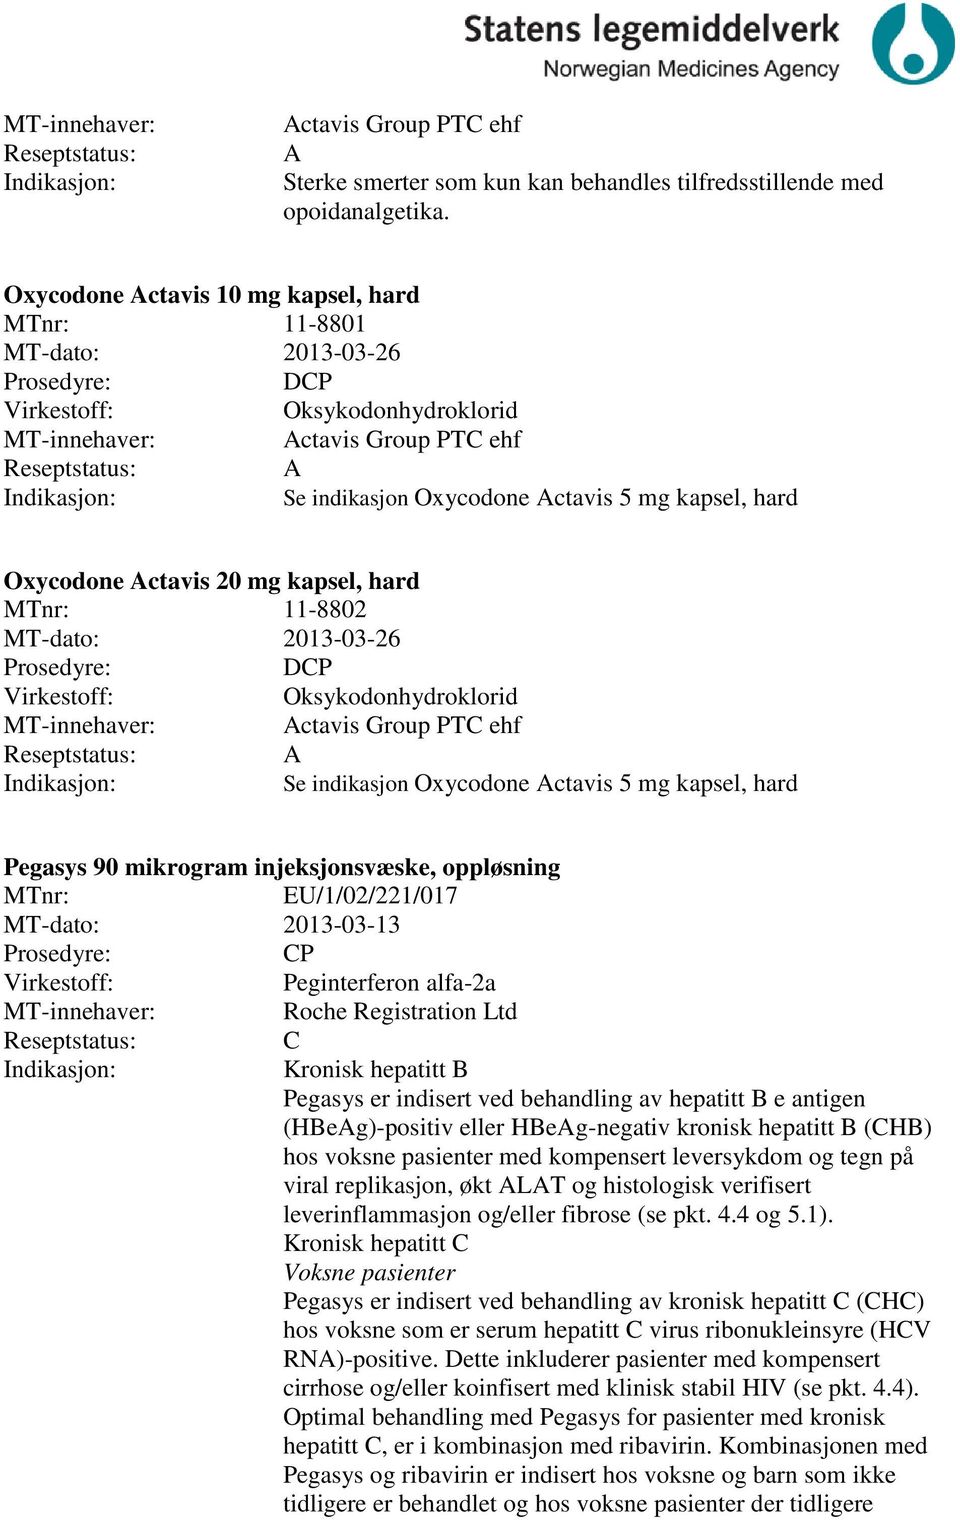 11-8802 MT-dato: 2013-03-26 DP Oksykodonhydroklorid Actavis Group PT ehf A Se indikasjon Oxycodone Actavis 5 mg kapsel, hard Pegasys 90 mikrogram injeksjonsvæske, oppløsning EU/1/02/221/017 MT-dato: